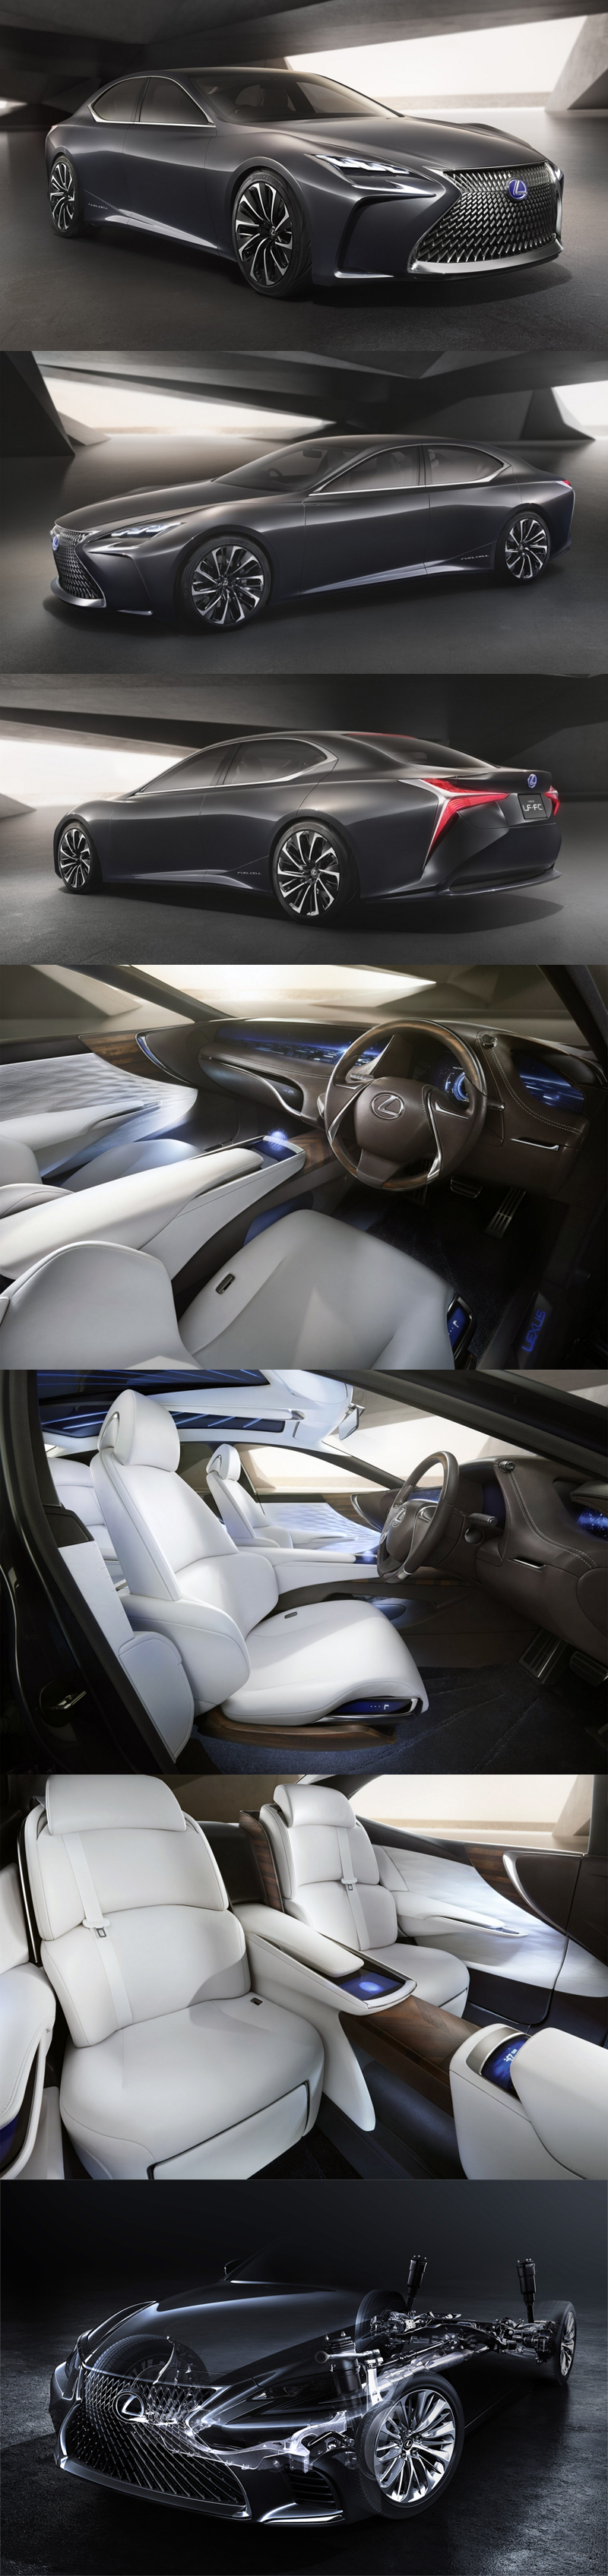 Lexus_LS_Concept_2015